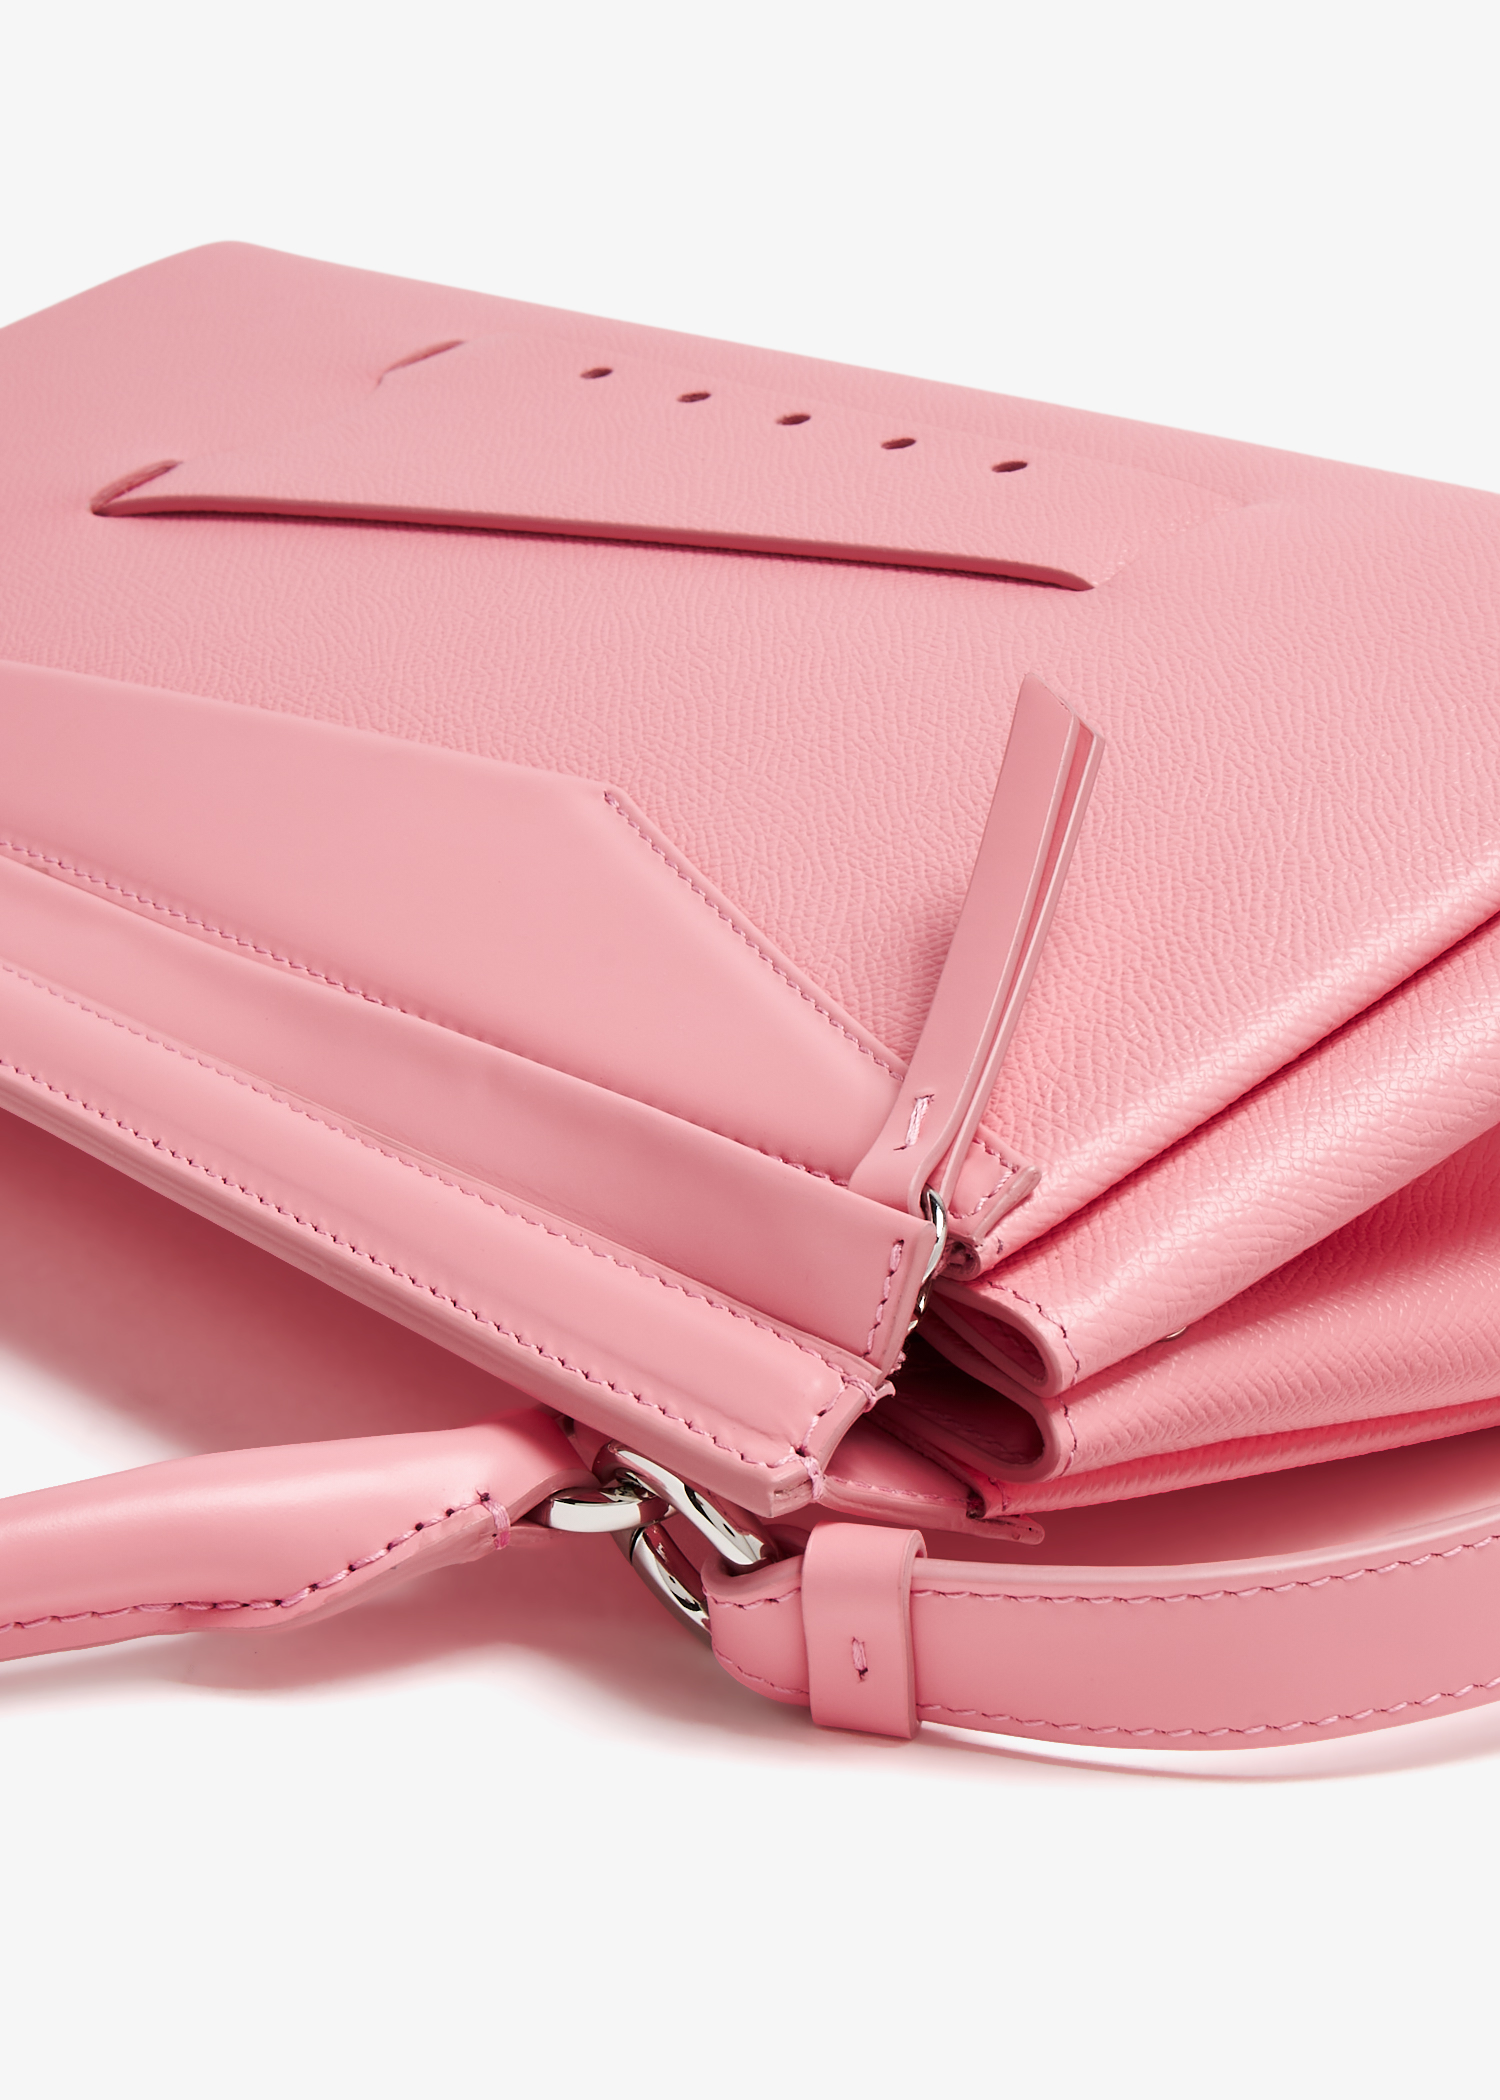 Maison Margiela Snatched Classique top handle bag for Women - Pink 